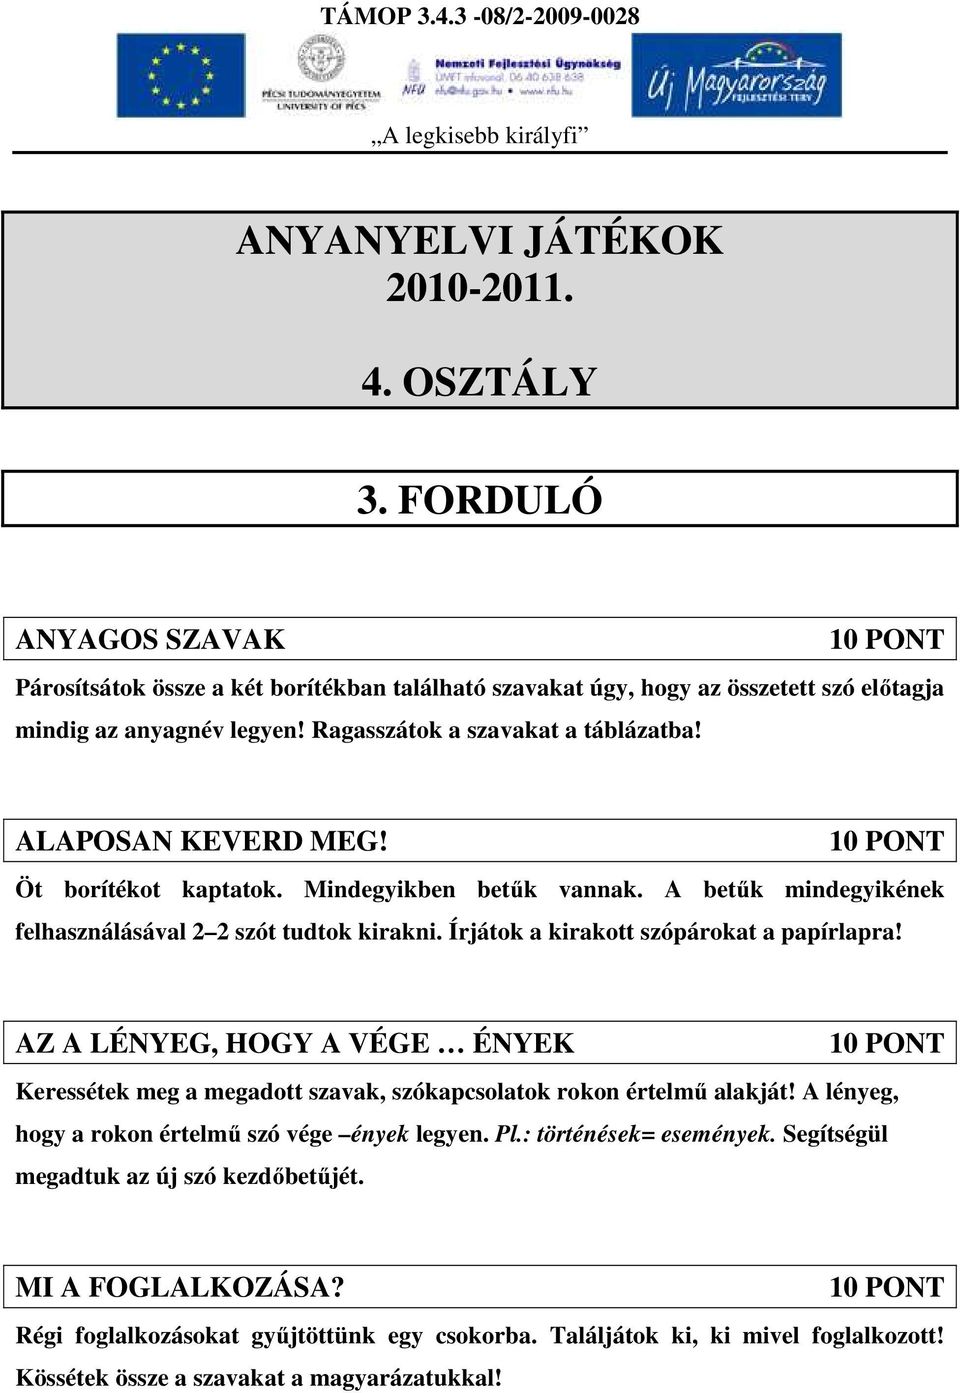 ANYANYELVI JÁTÉKOK OSZTÁLY 3. FORDULÓ - PDF Ingyenes letöltés